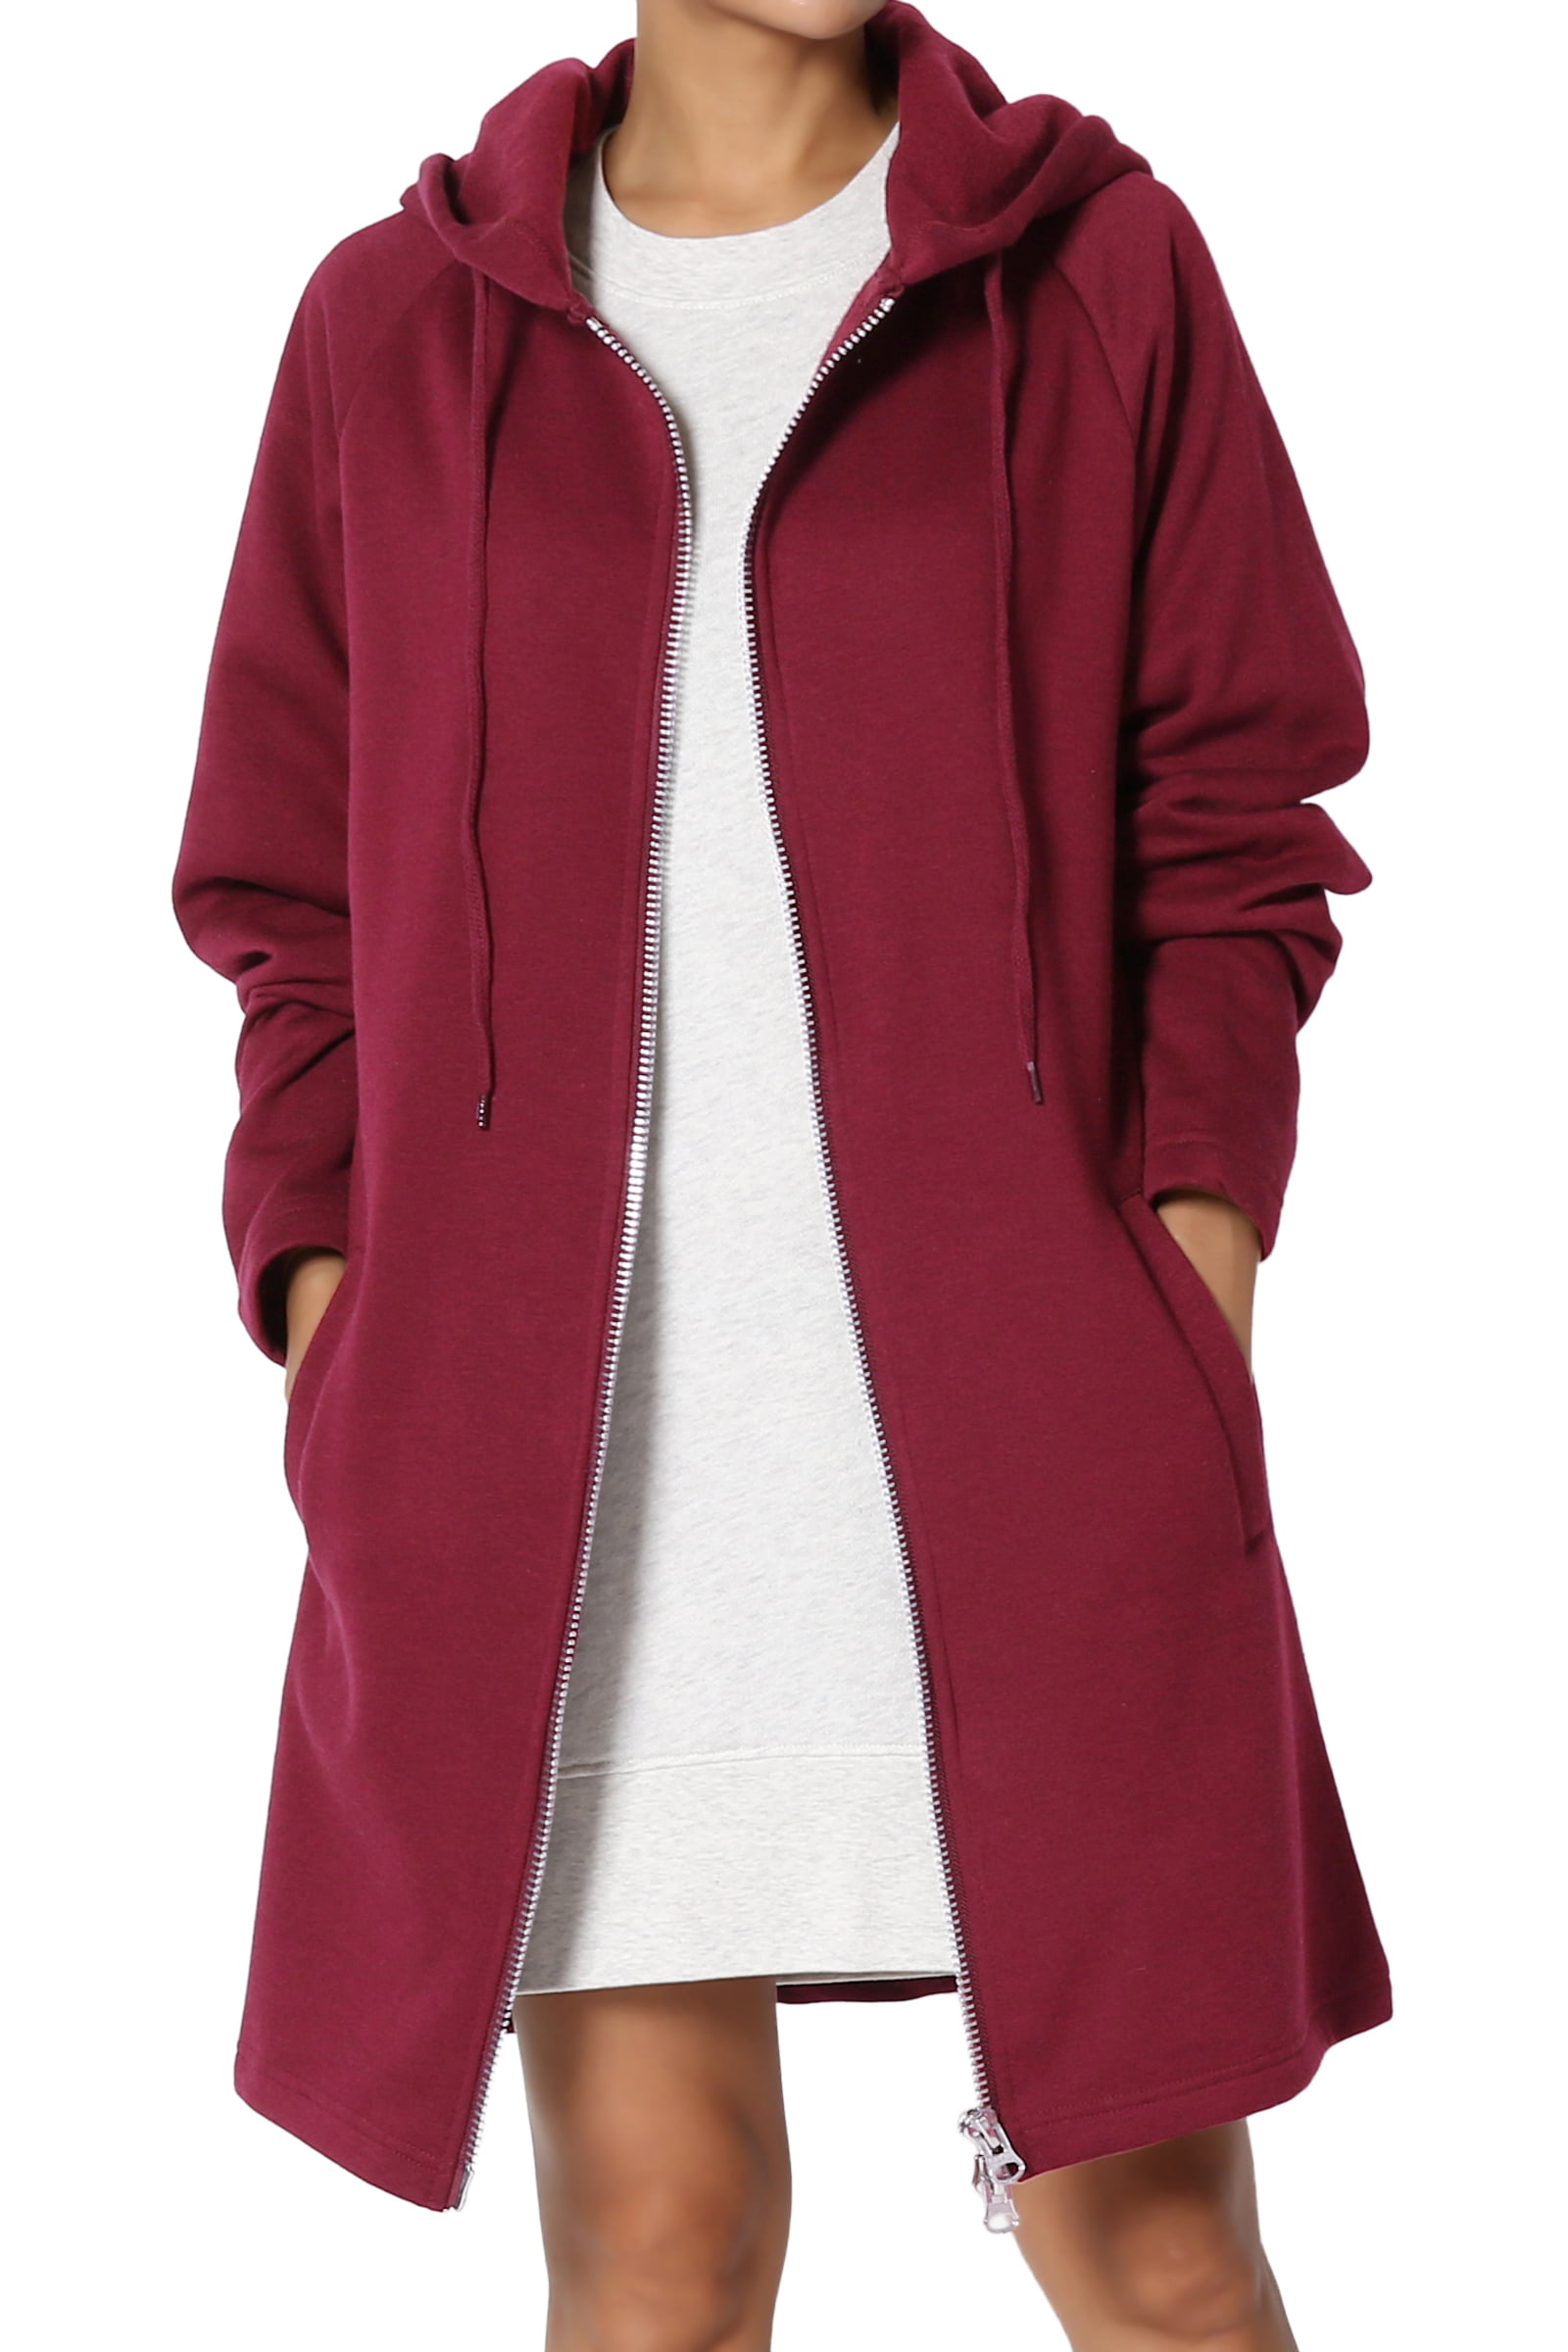 NEW Women Men's Hooded Full Zip Coat Jacket Sweats Hoodie Outwear 